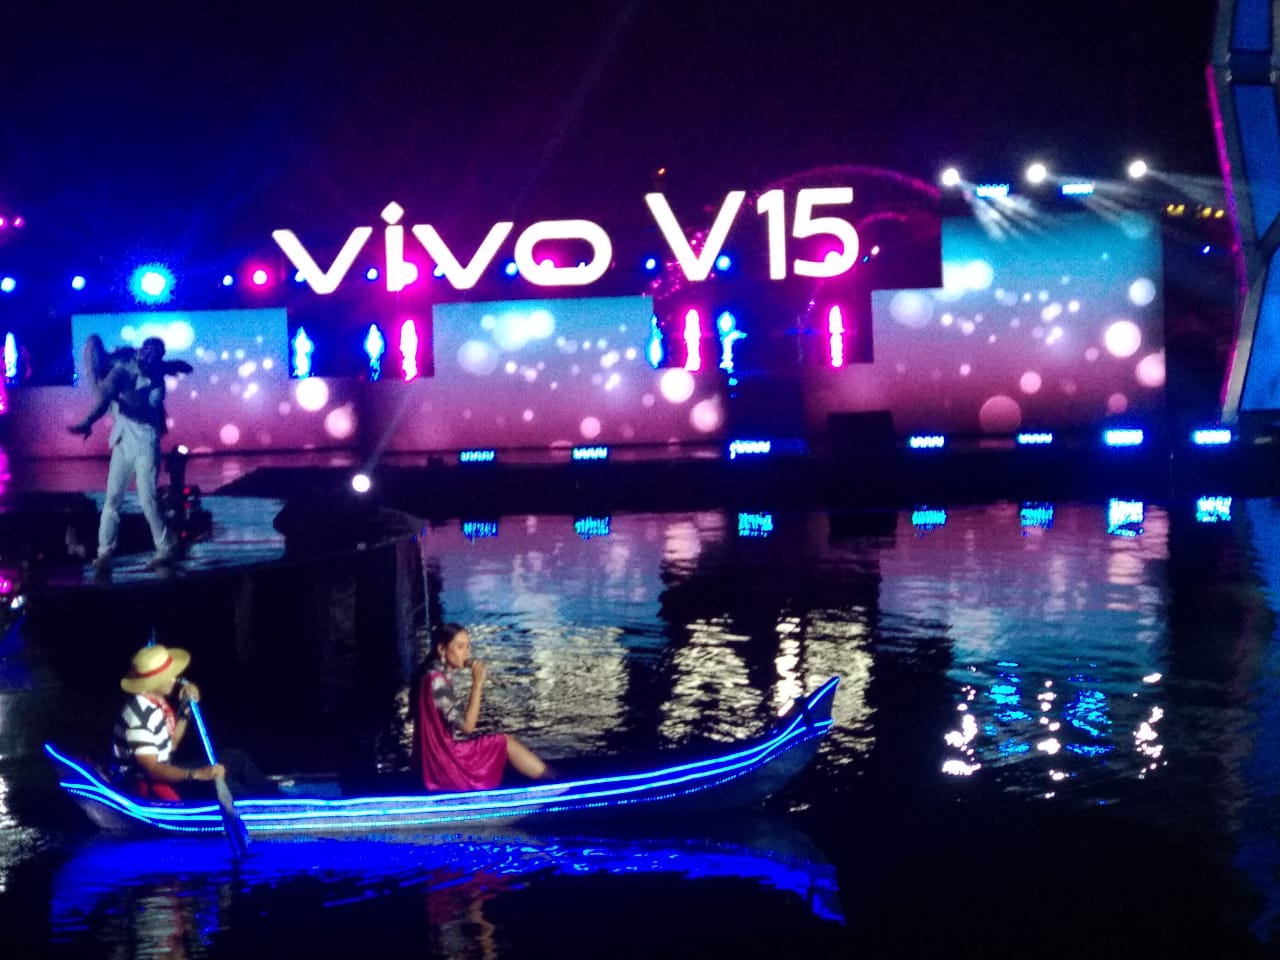 Melihat Lagi Keseruan Launching Vivo 15 di Taman Air Mancur Sri Baduga